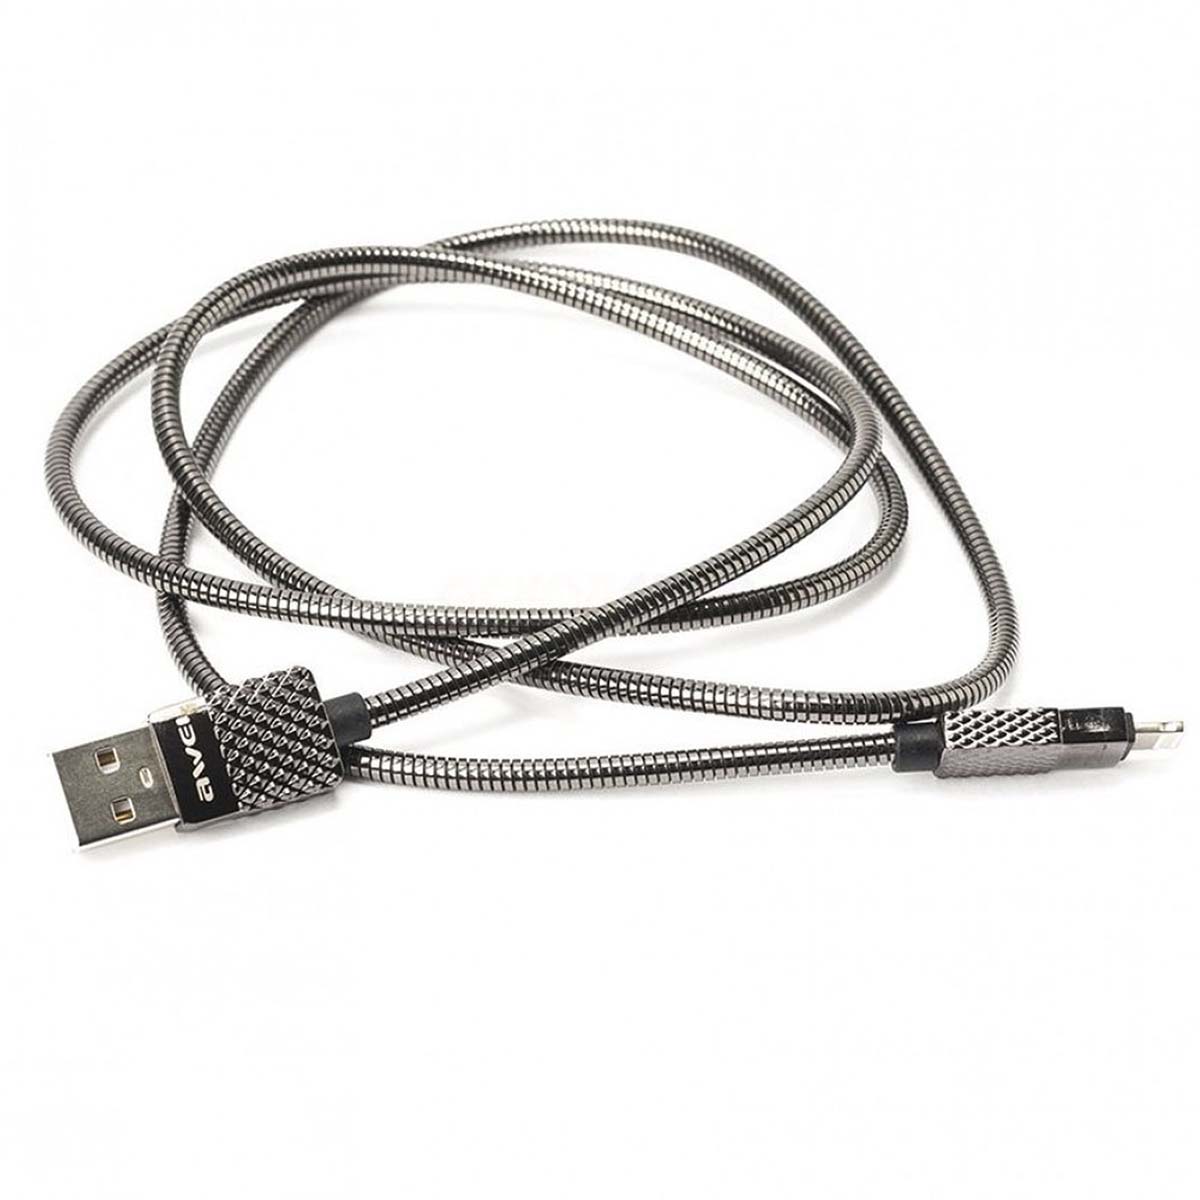 AWEI CL-87 METAL кабель APPLE Lightning 8-pin, 2.4A, длина 1 метр, цвет серый.